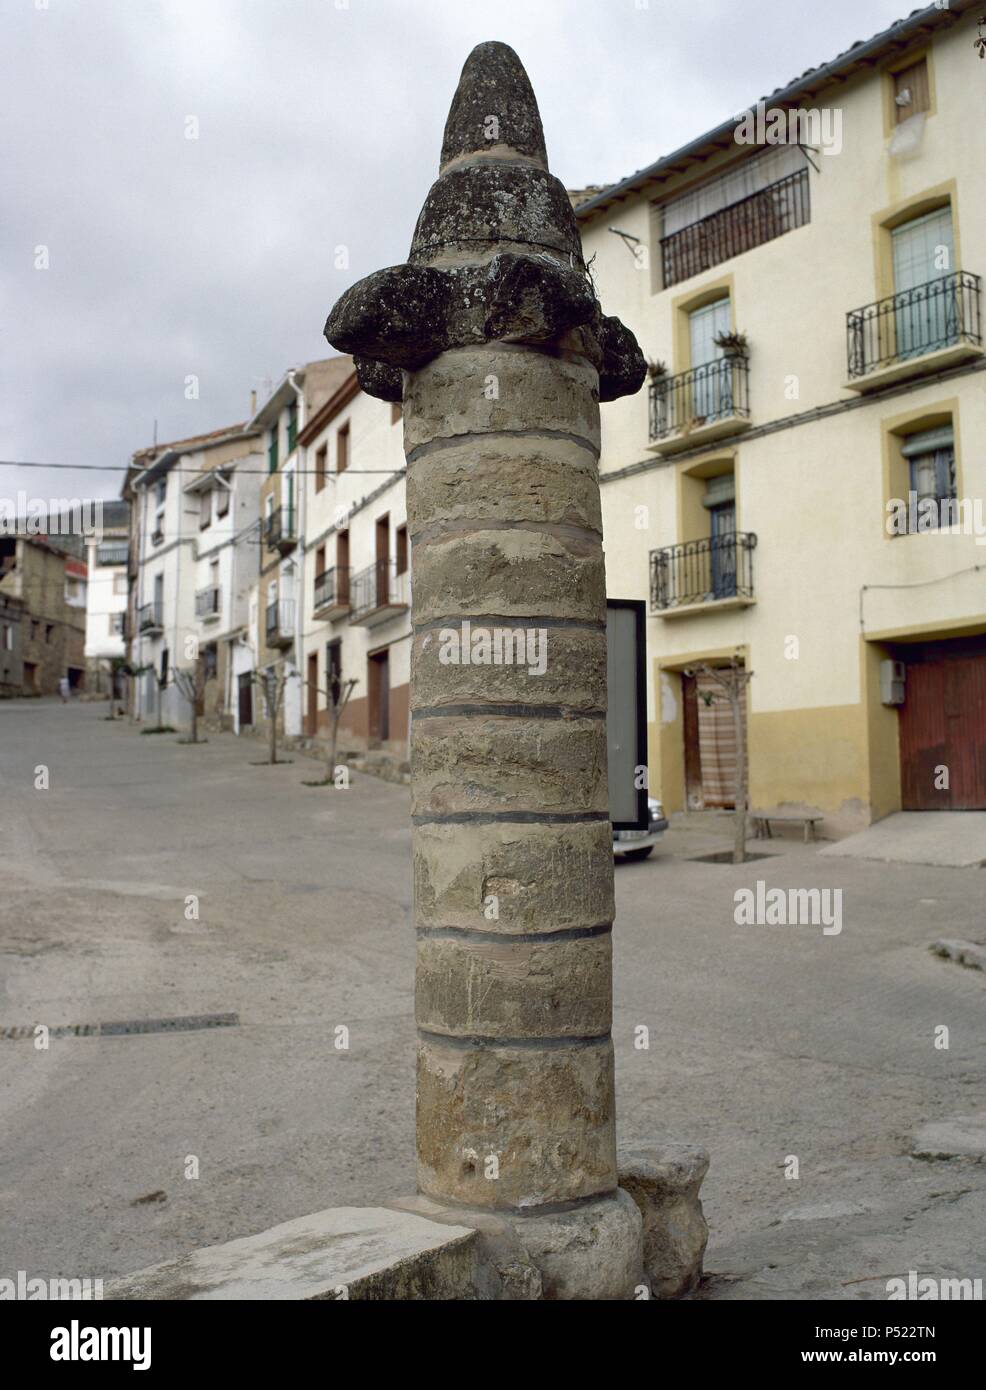 Pillory of public punishment. Middle Ages. Muro de Aguas. La Rioja. Spain. Stock Photo